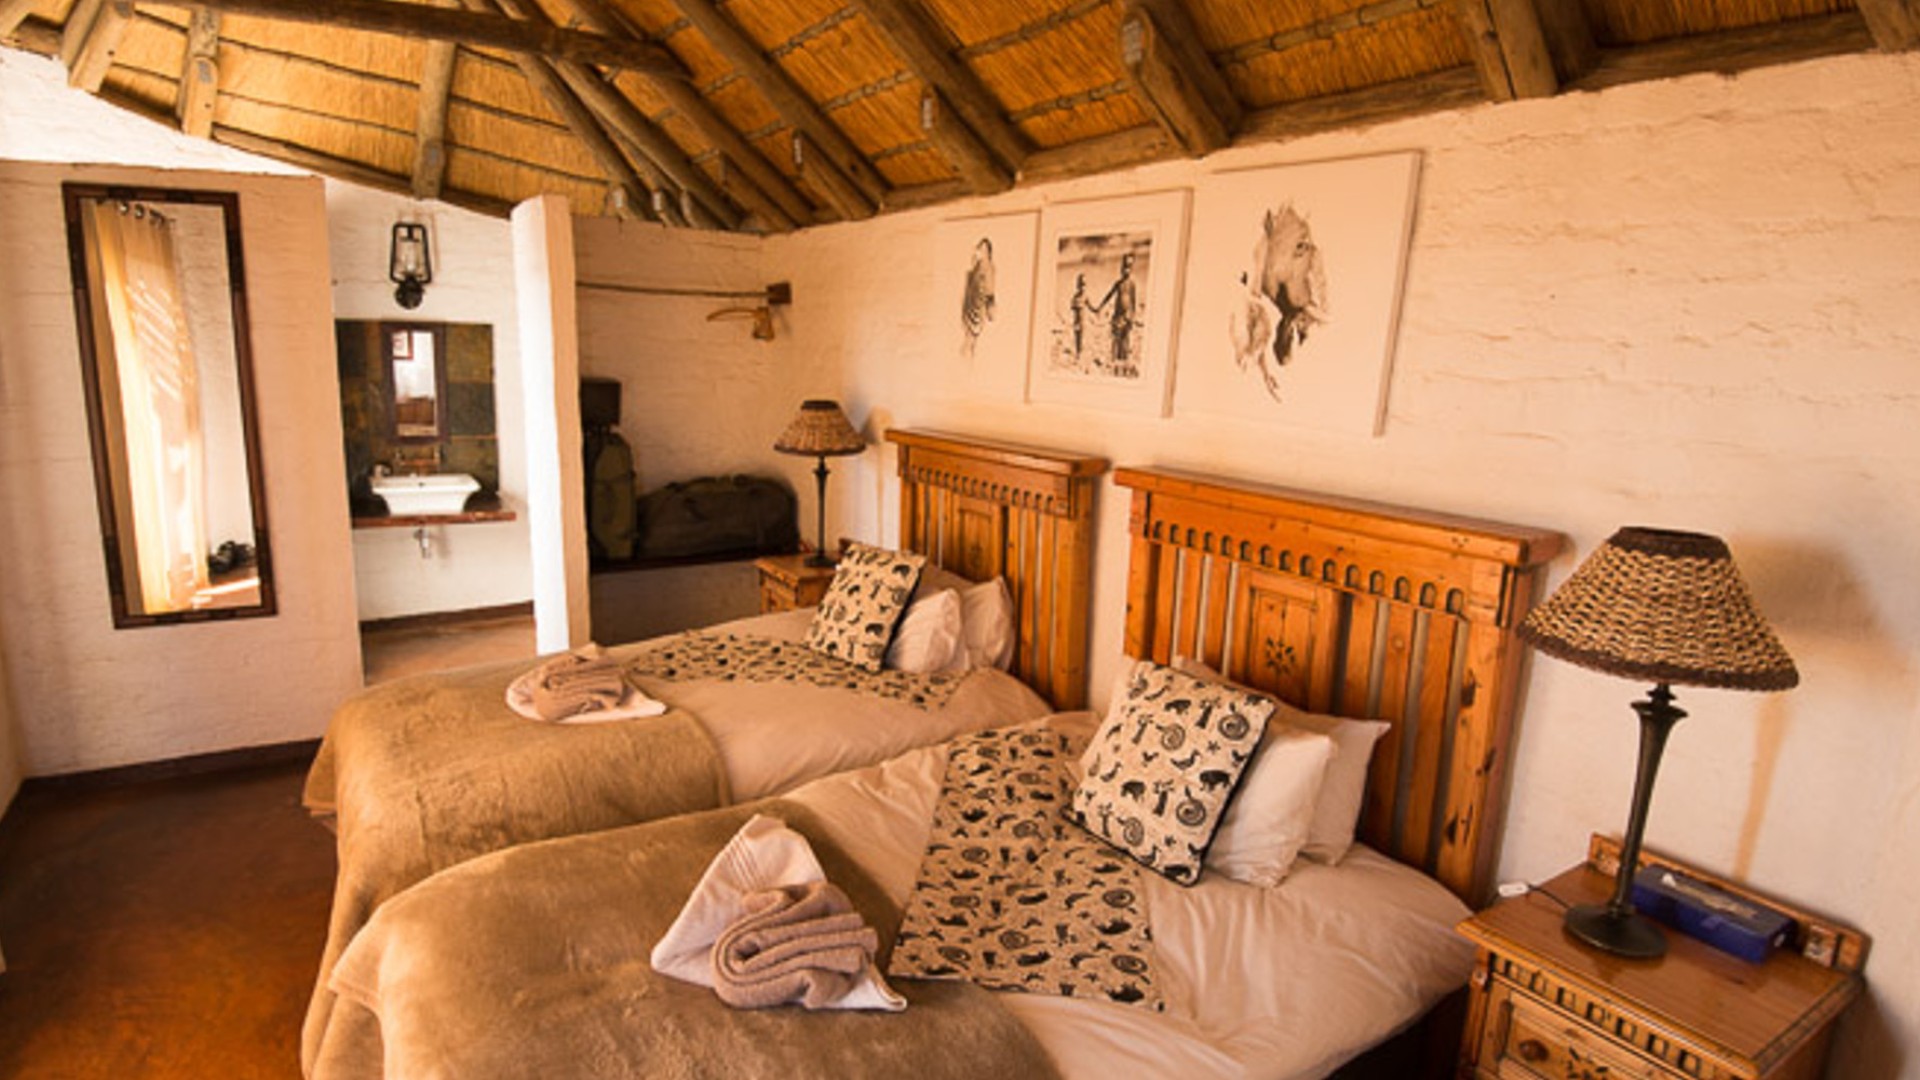 namibia safari lodge